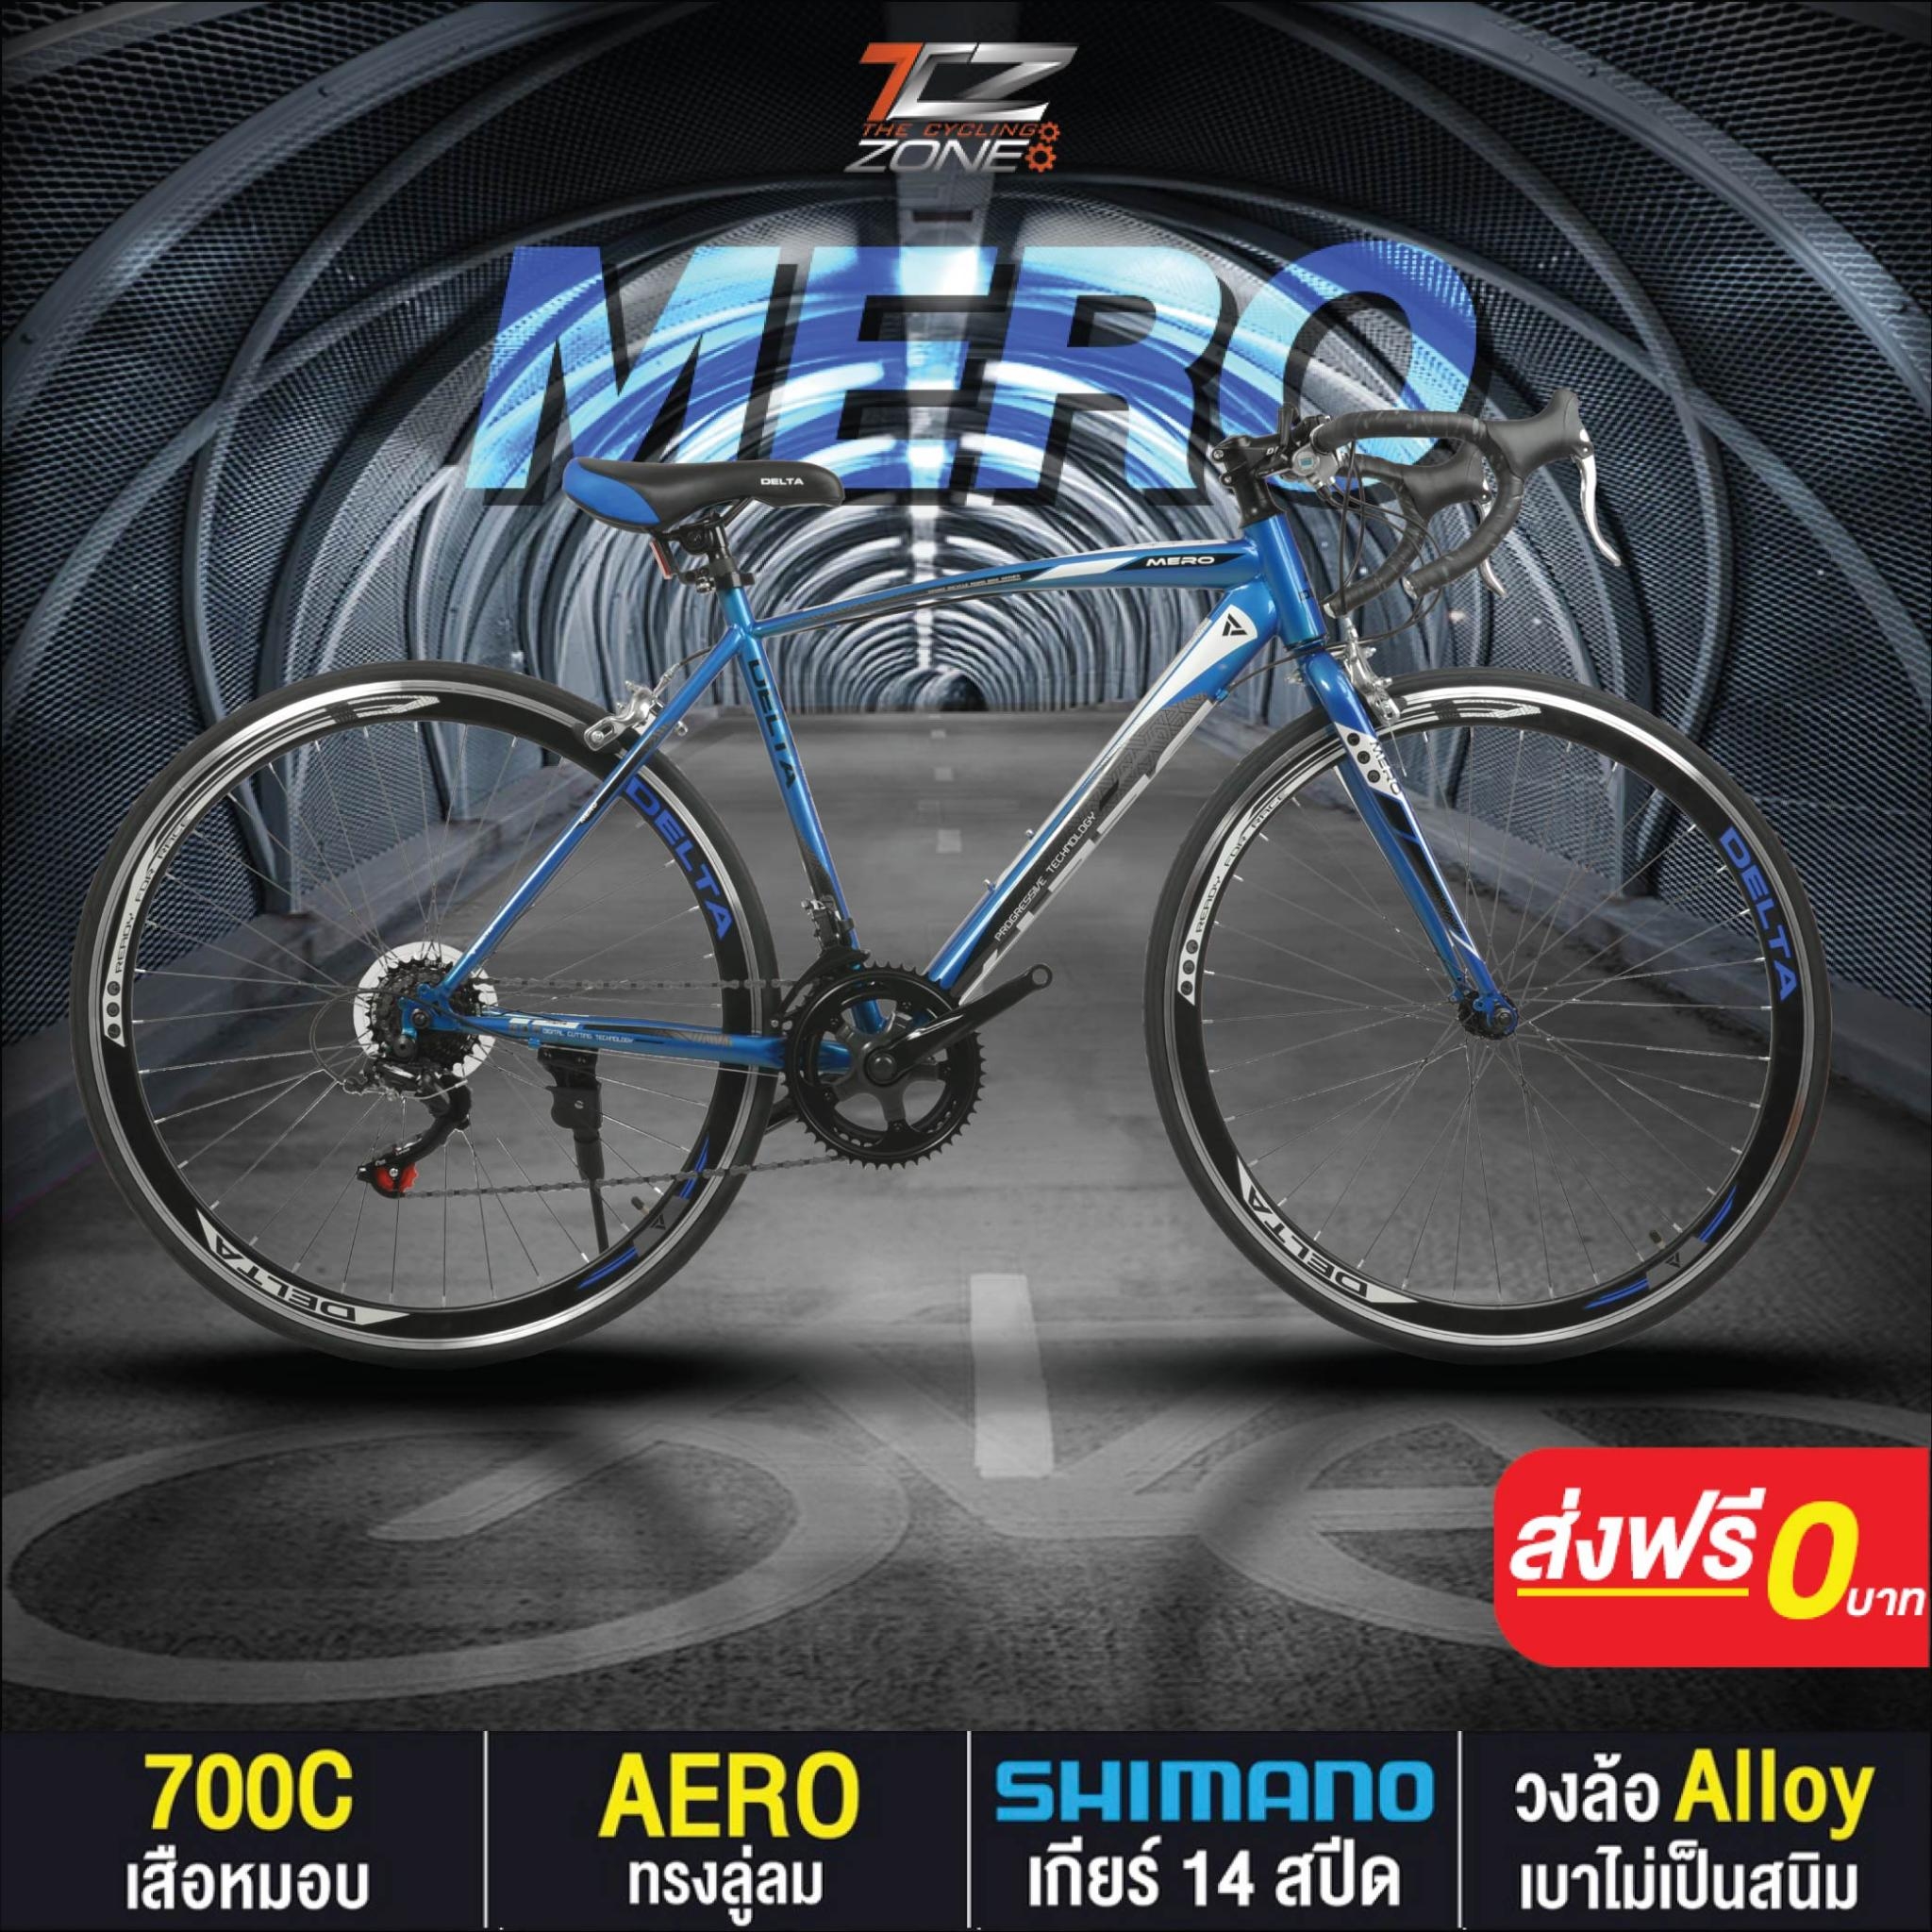 จักรยานเสือหมอบ 700C / DELTA เกียร์ SHIMANO 14 สปีด / ไซส์ 49 / รุ่น MERO สีฟ้า By The Cycling Zone